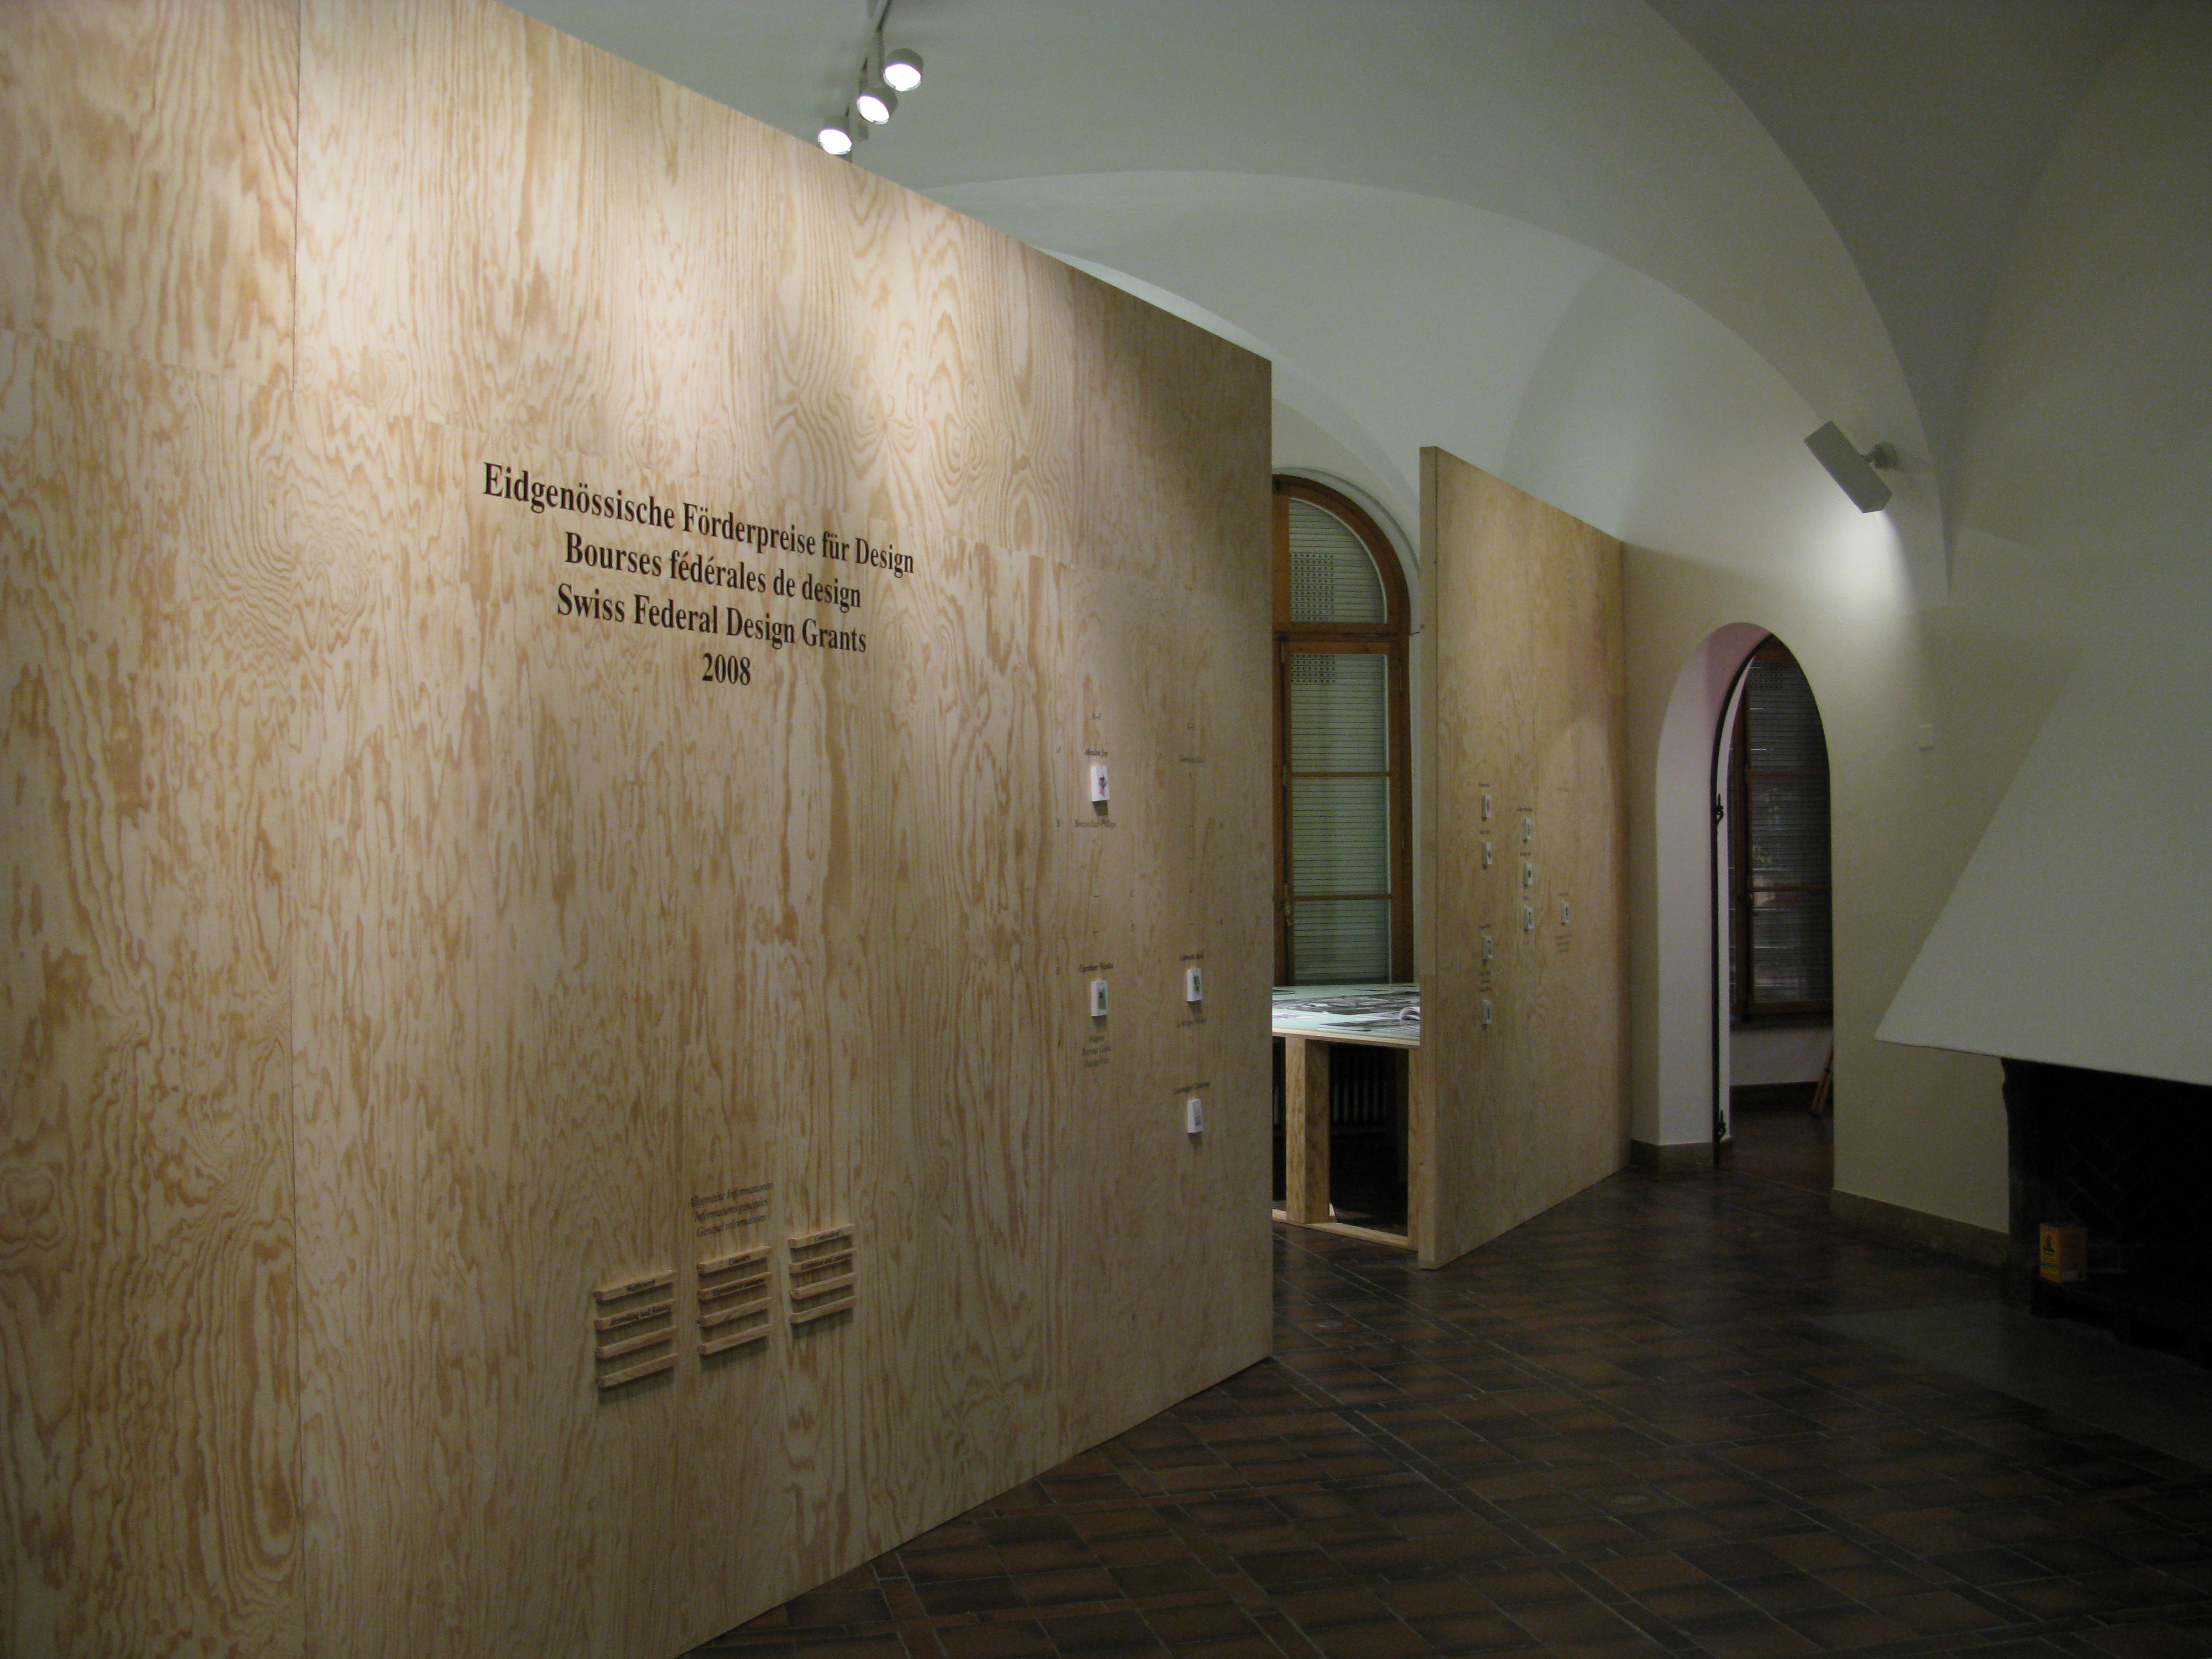 Eingang zur Ausstellung